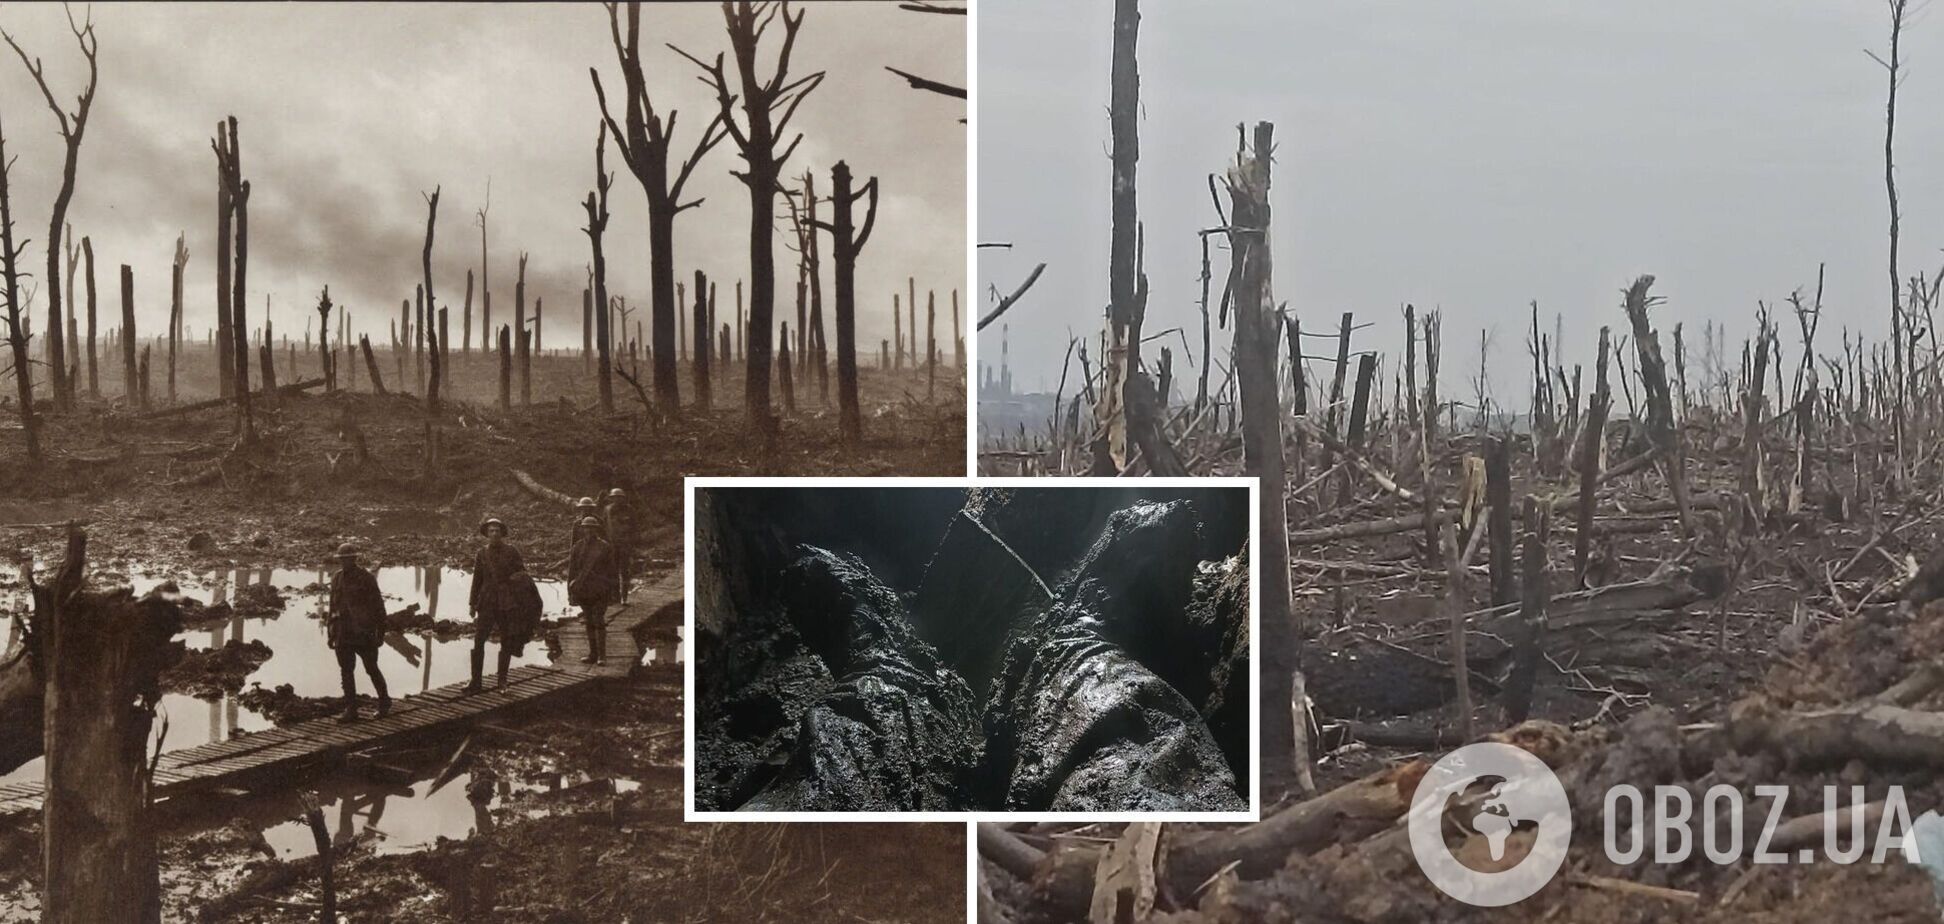 Випалена земля і пів метра води в окопах: в мережі показали свіжі фото з Бахмуту і світлини часів Першої світової війни